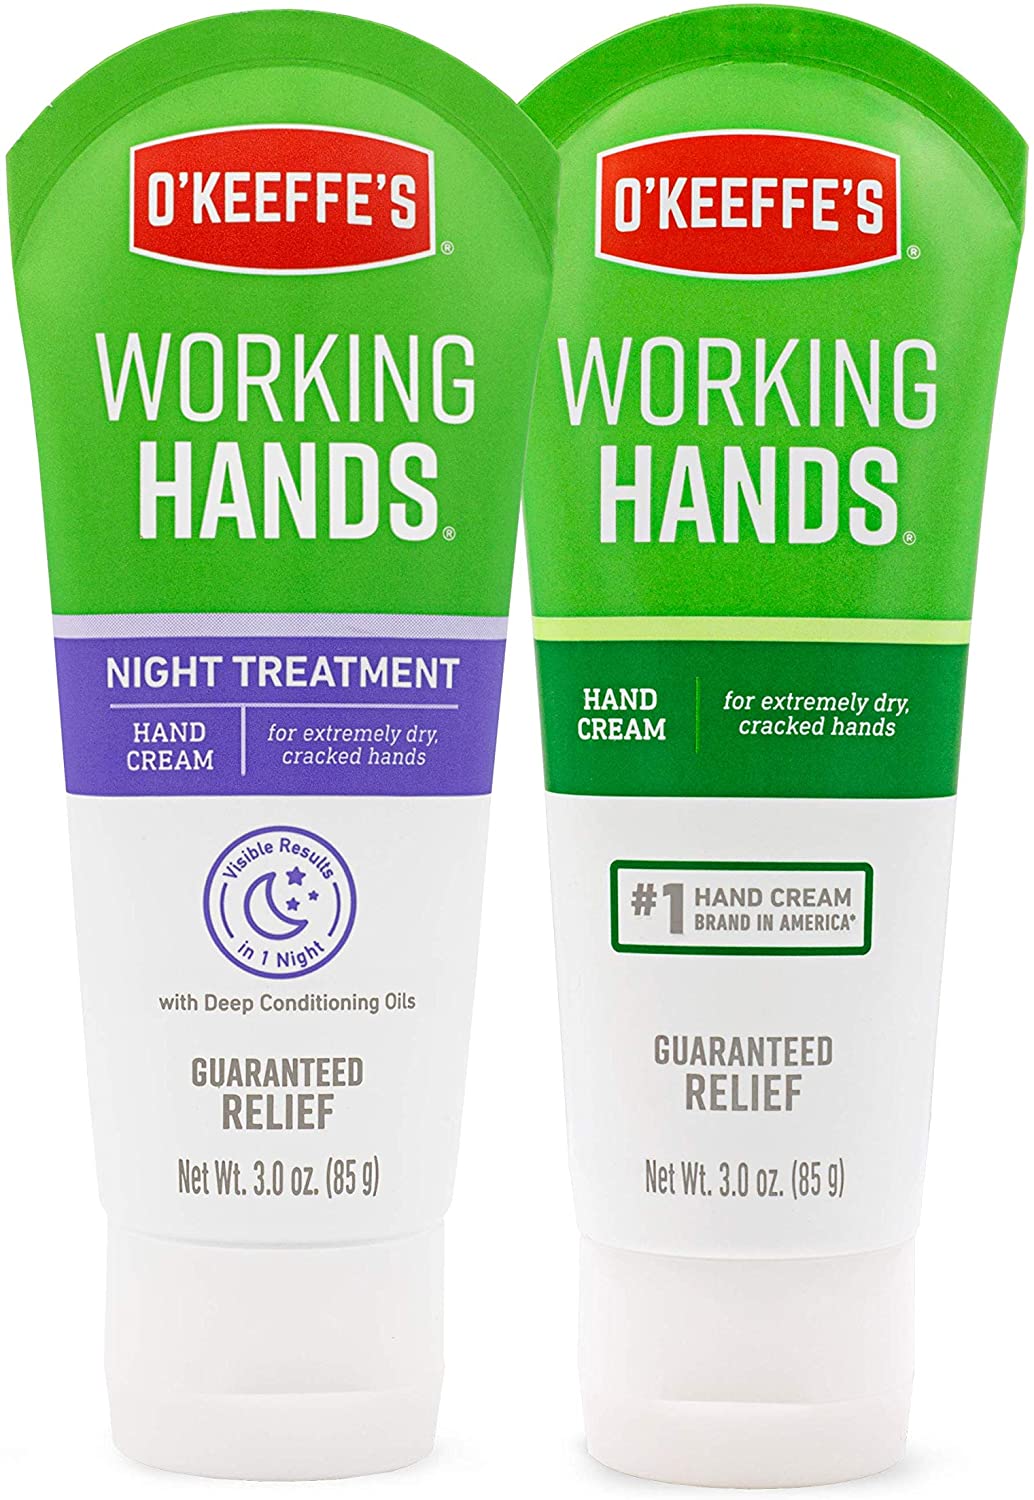 Nourishing Hand Cream